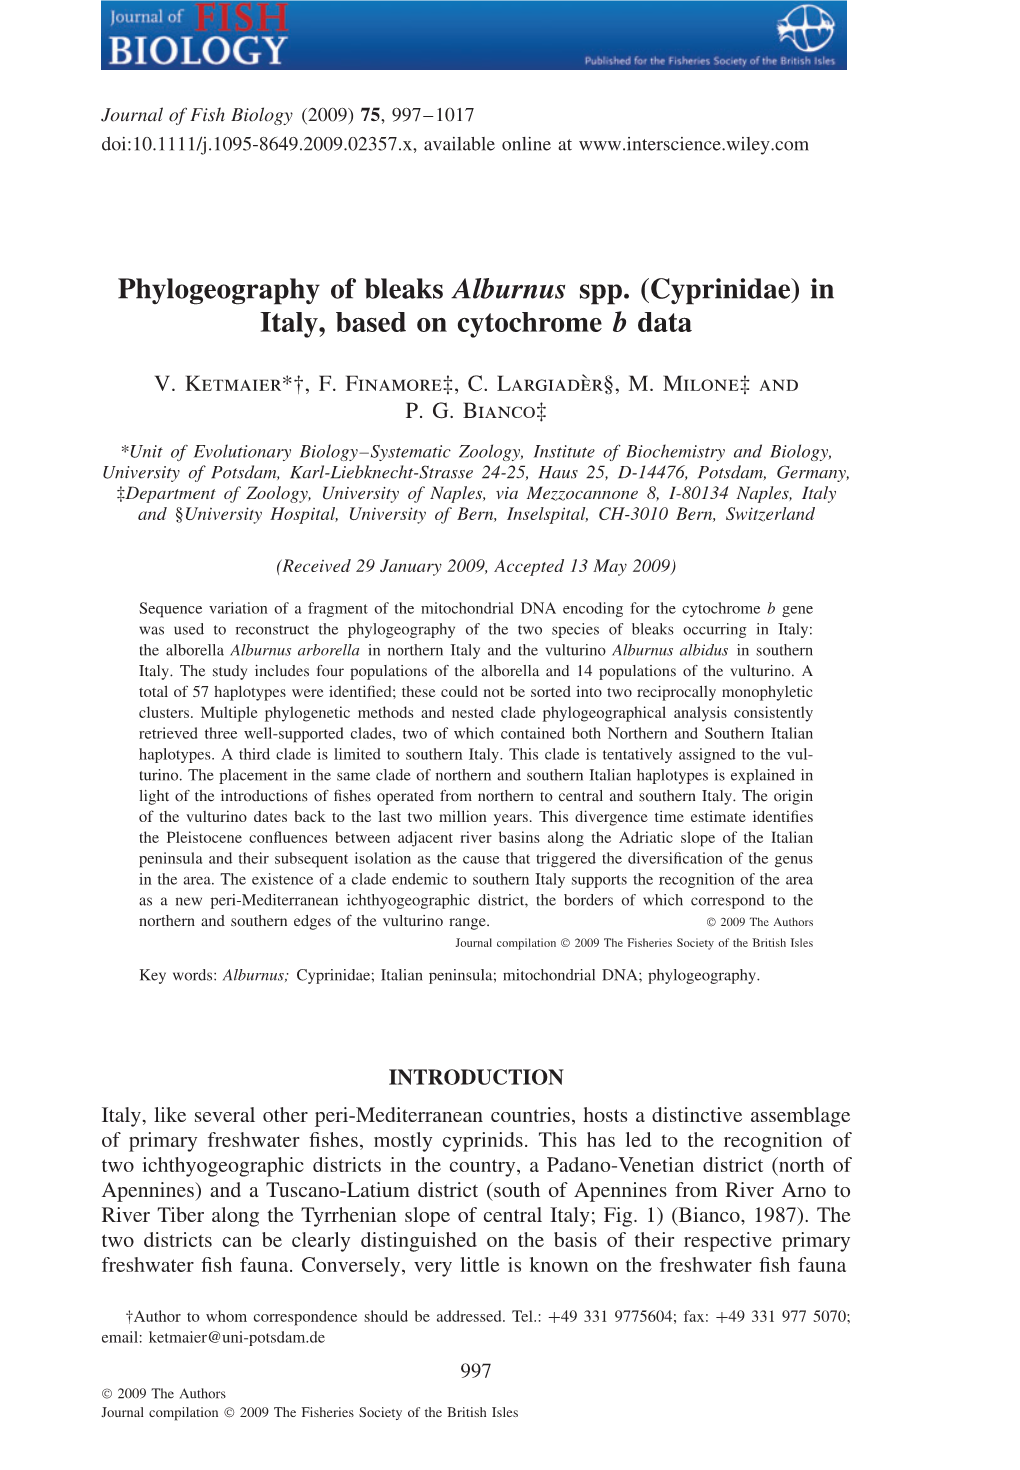 Phylogeography of Bleaks Alburnus Spp. (Cyprinidae) in Italy, Based on Cytochrome B Data